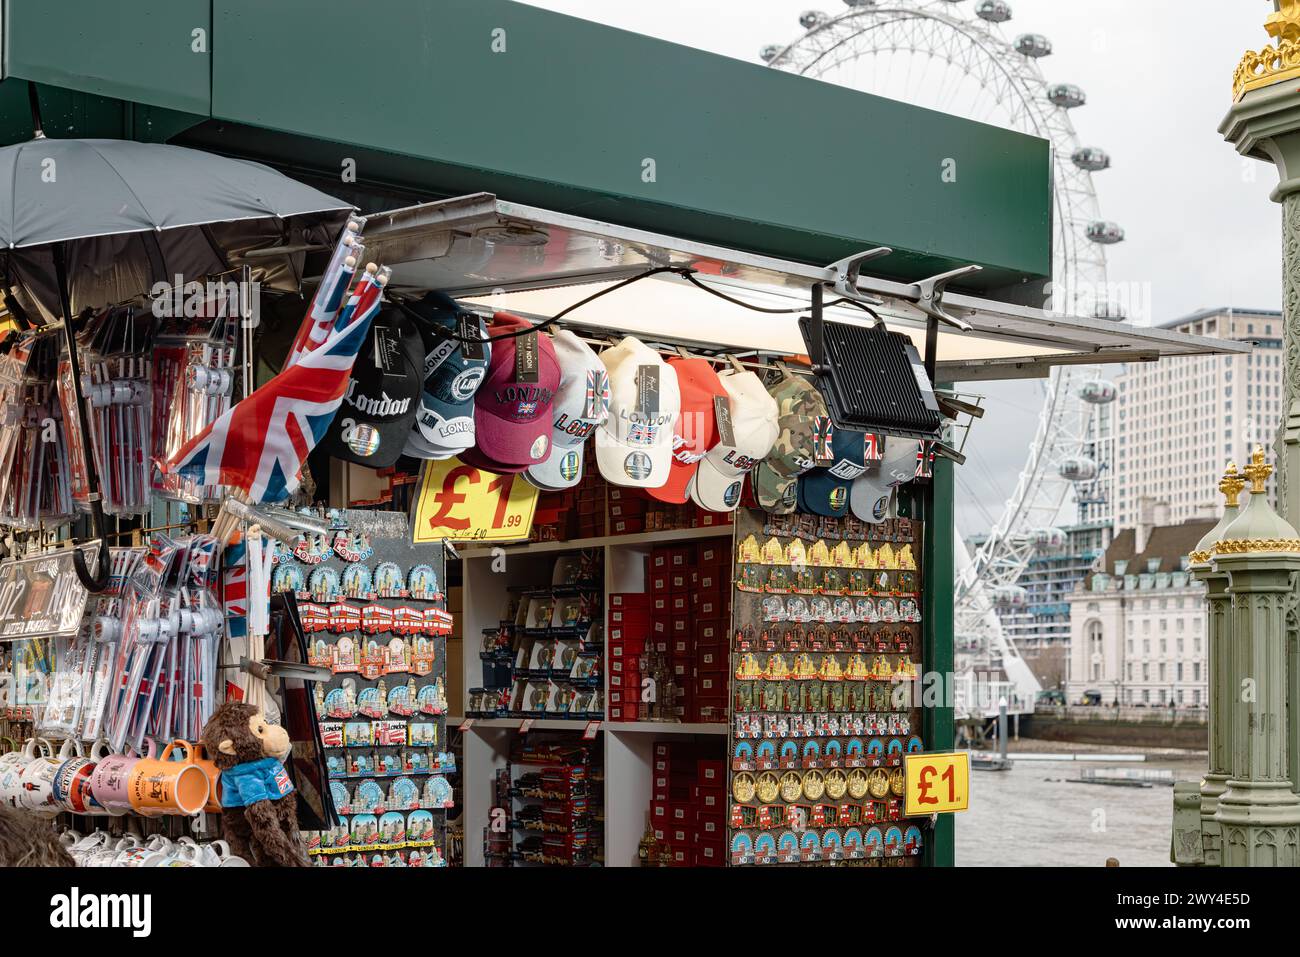 Ein Touristenstand, an dem Souvenirs aus London verkauft werden, mit dem London Eye oder dem Millennium Wheel in der Ferne. Reise und Tourismus, Wirtschaft oder BIP-Konzept. Stockfoto